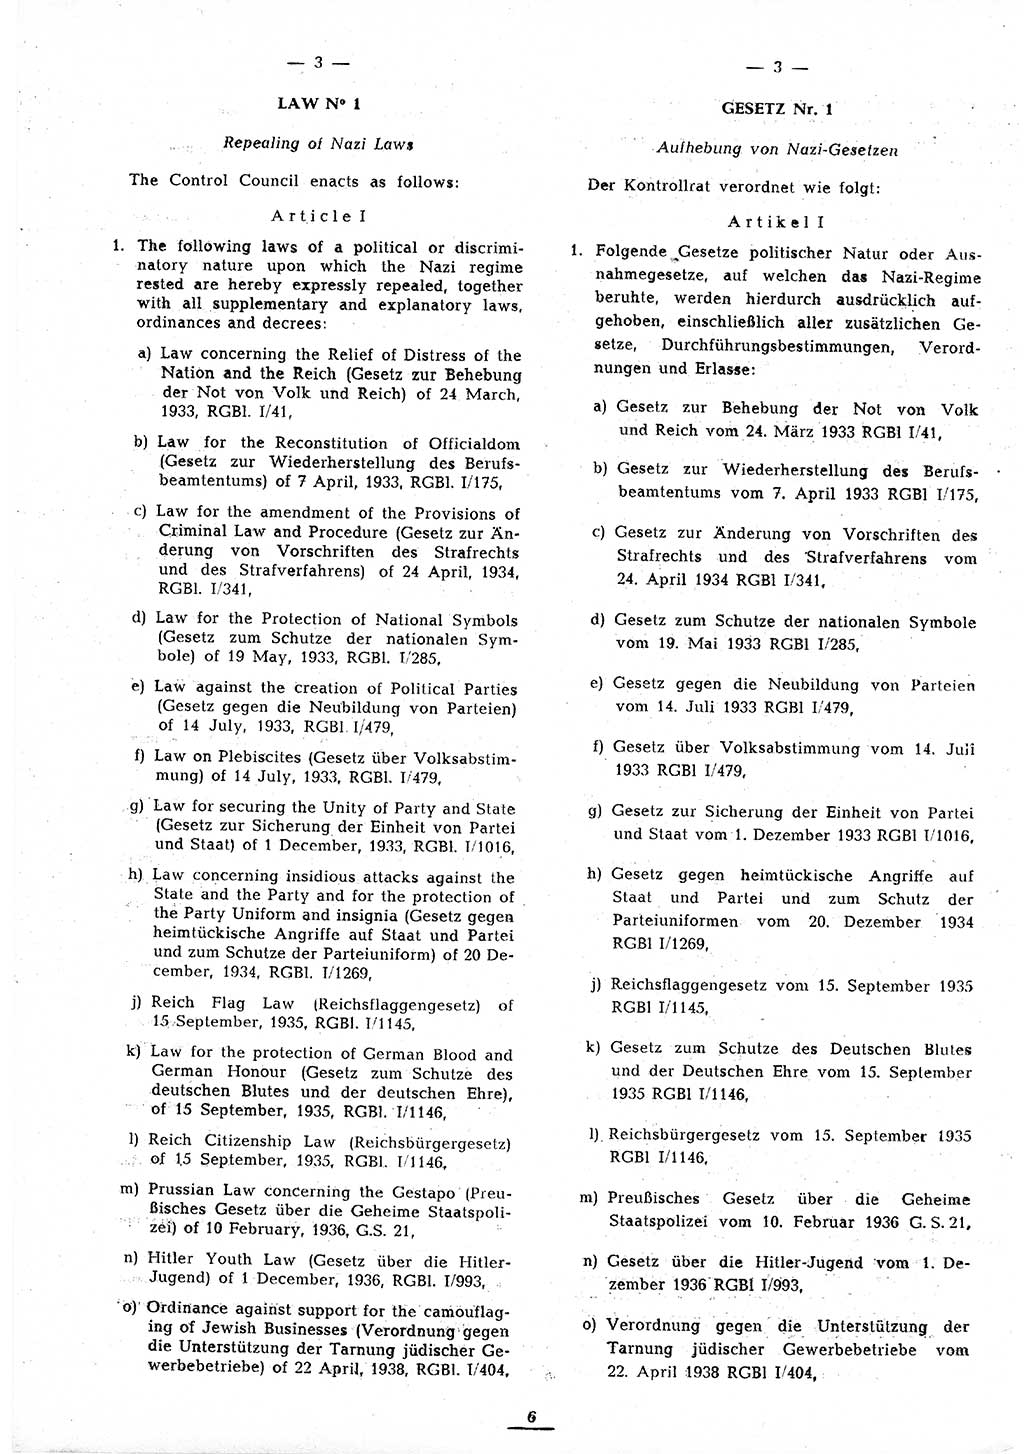 Amtsblatt des Kontrollrats (ABlKR) in Deutschland 1945, Seite 6/2 (ABlKR Dtl. 1945, S. 6/2)